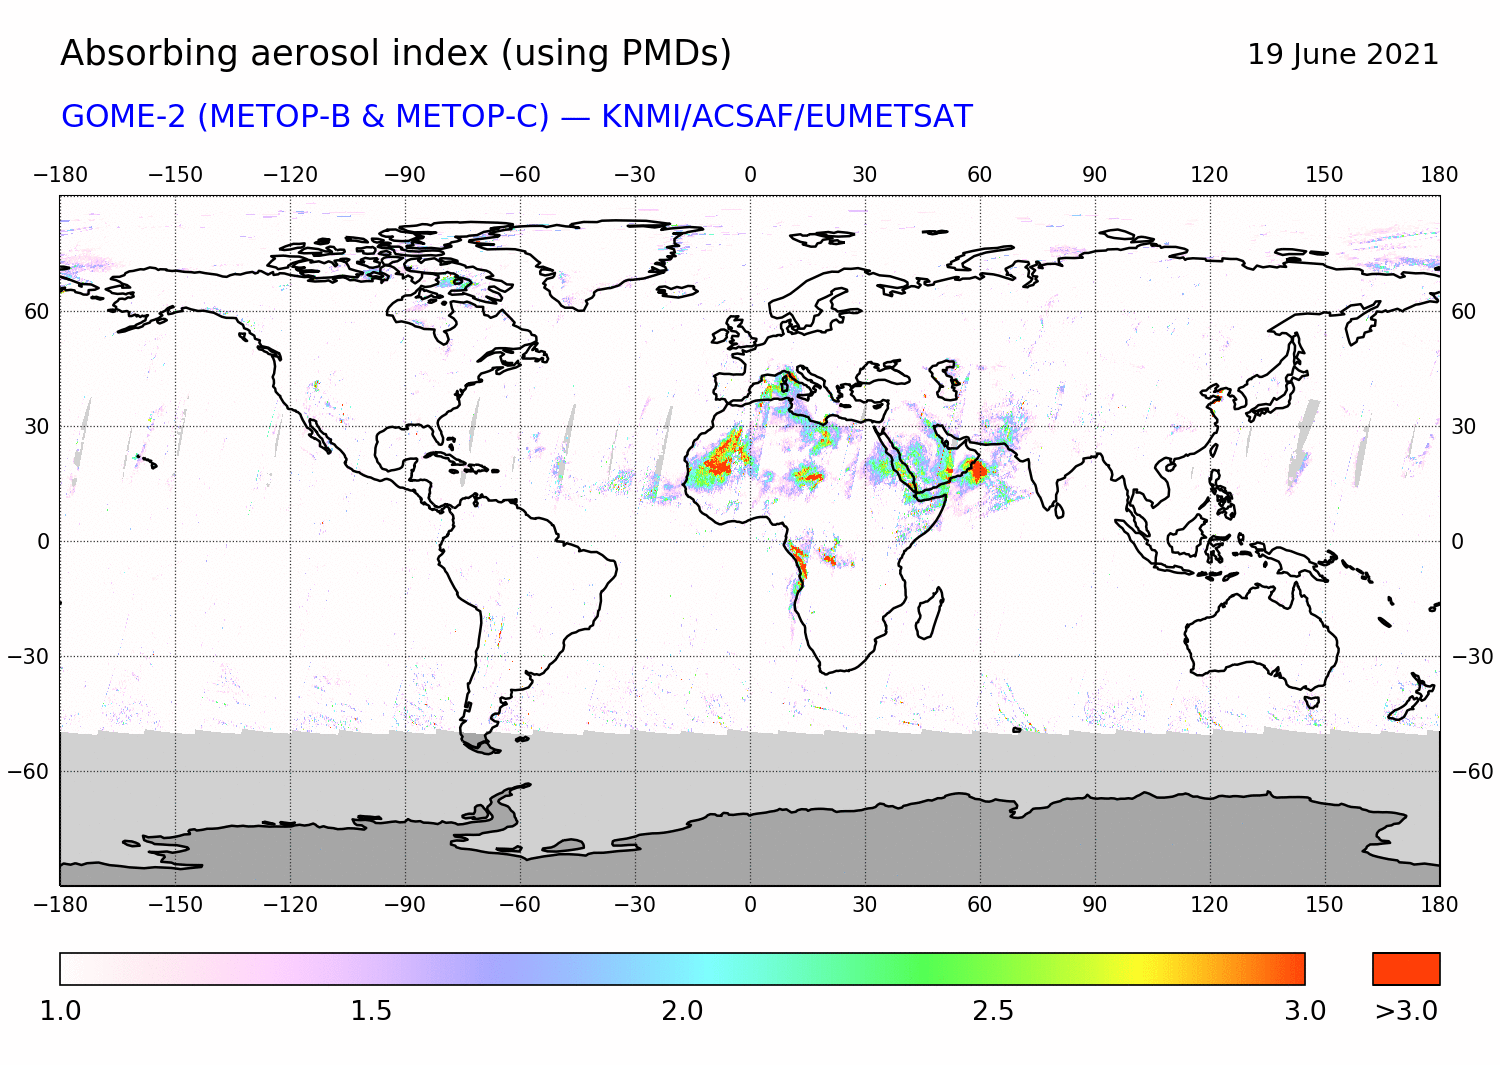 GOME-2 - Absorbing aerosol index of 19 June 2021